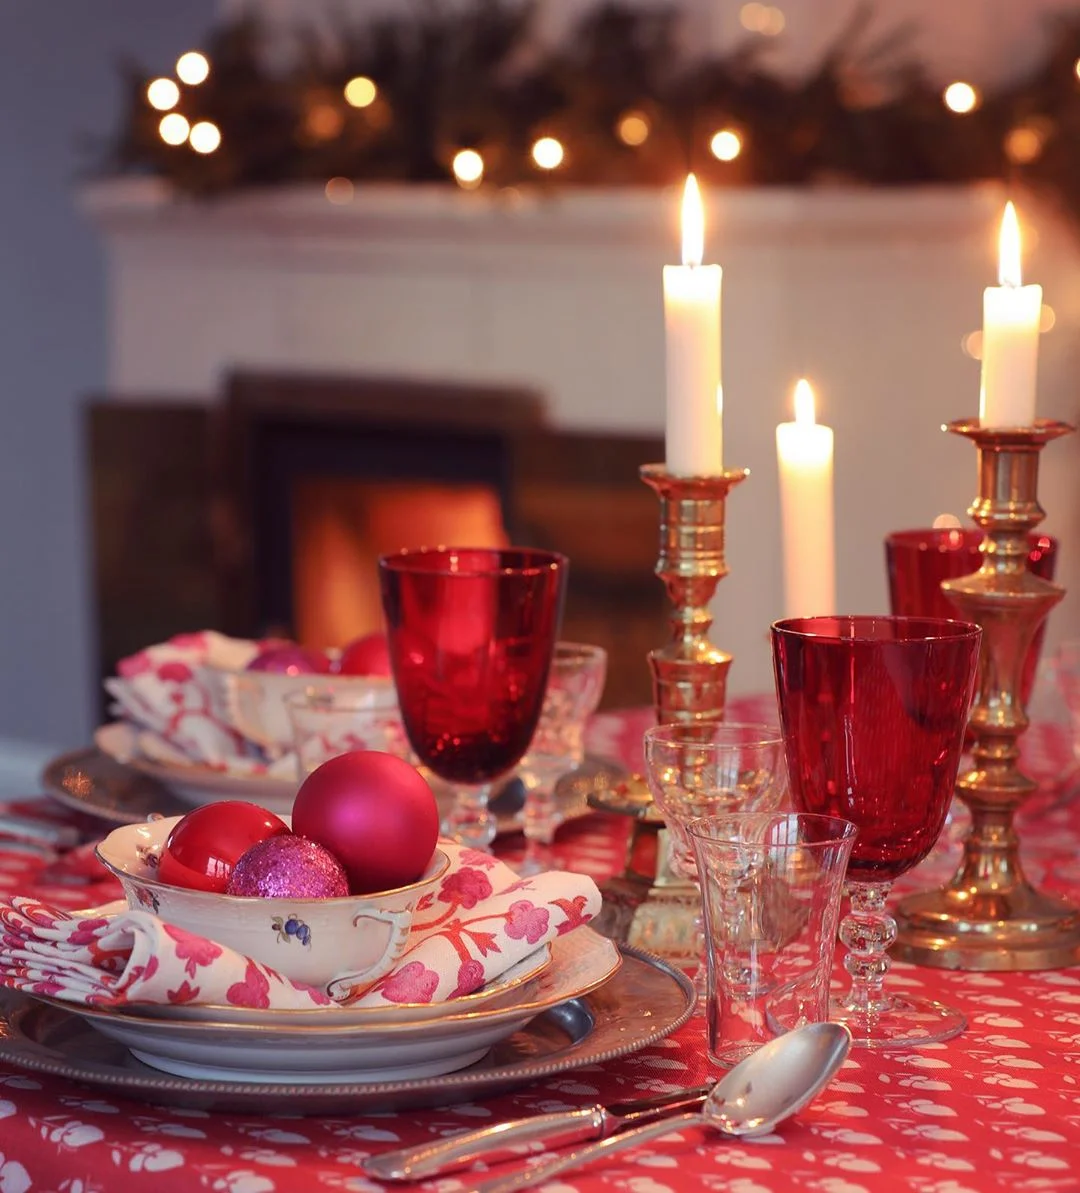 Как декорировать рождественский стол: самые красивые идеи для вдохновения - фото 461728